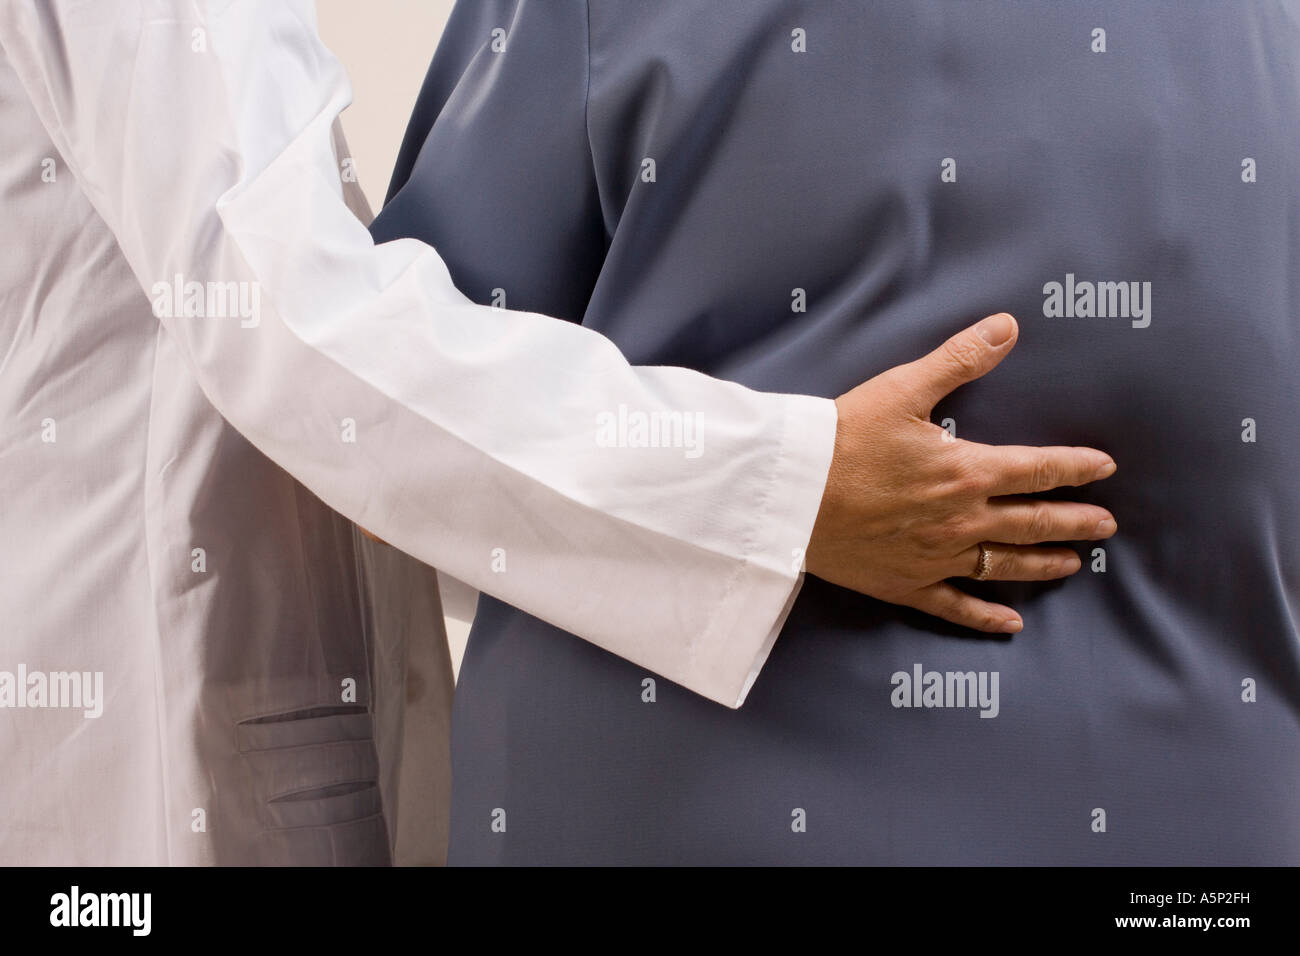 Travailleur de la santé tenir son bras autour de son patient. Banque D'Images